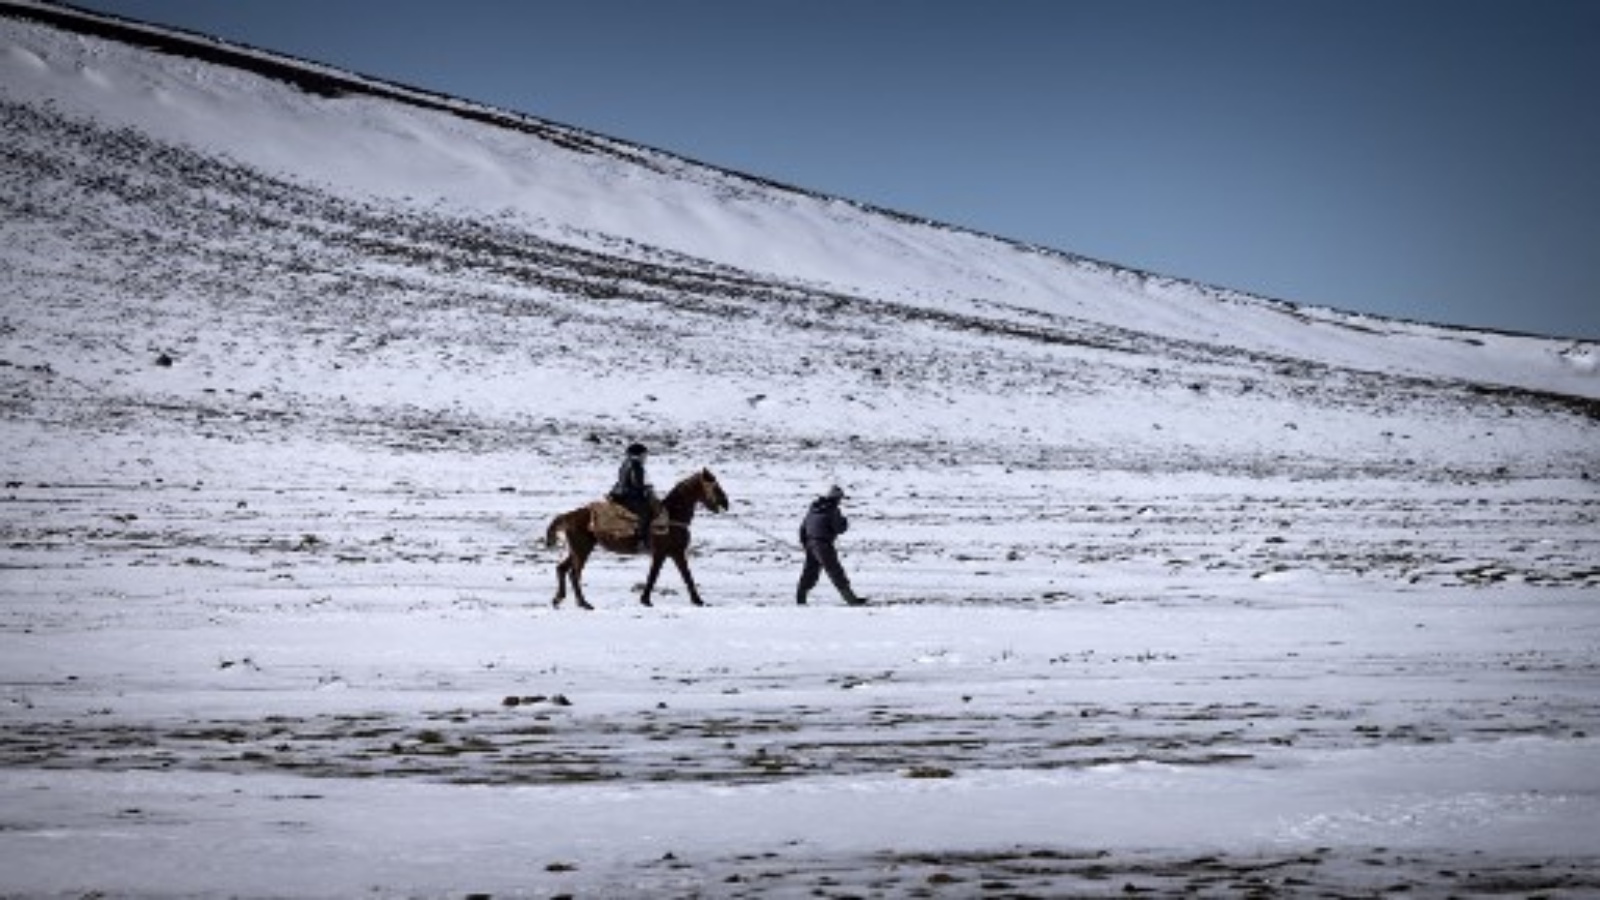 مرشد خيول محلي يمشي مع سائح يمتط على الجليد في مدينة أزرو ، على بعد حوالي 89 كيلومترًا جنوب فاس بإقليم إفران شمال المغرب في جبال الأطلس ، في 8 فبراير 2021.